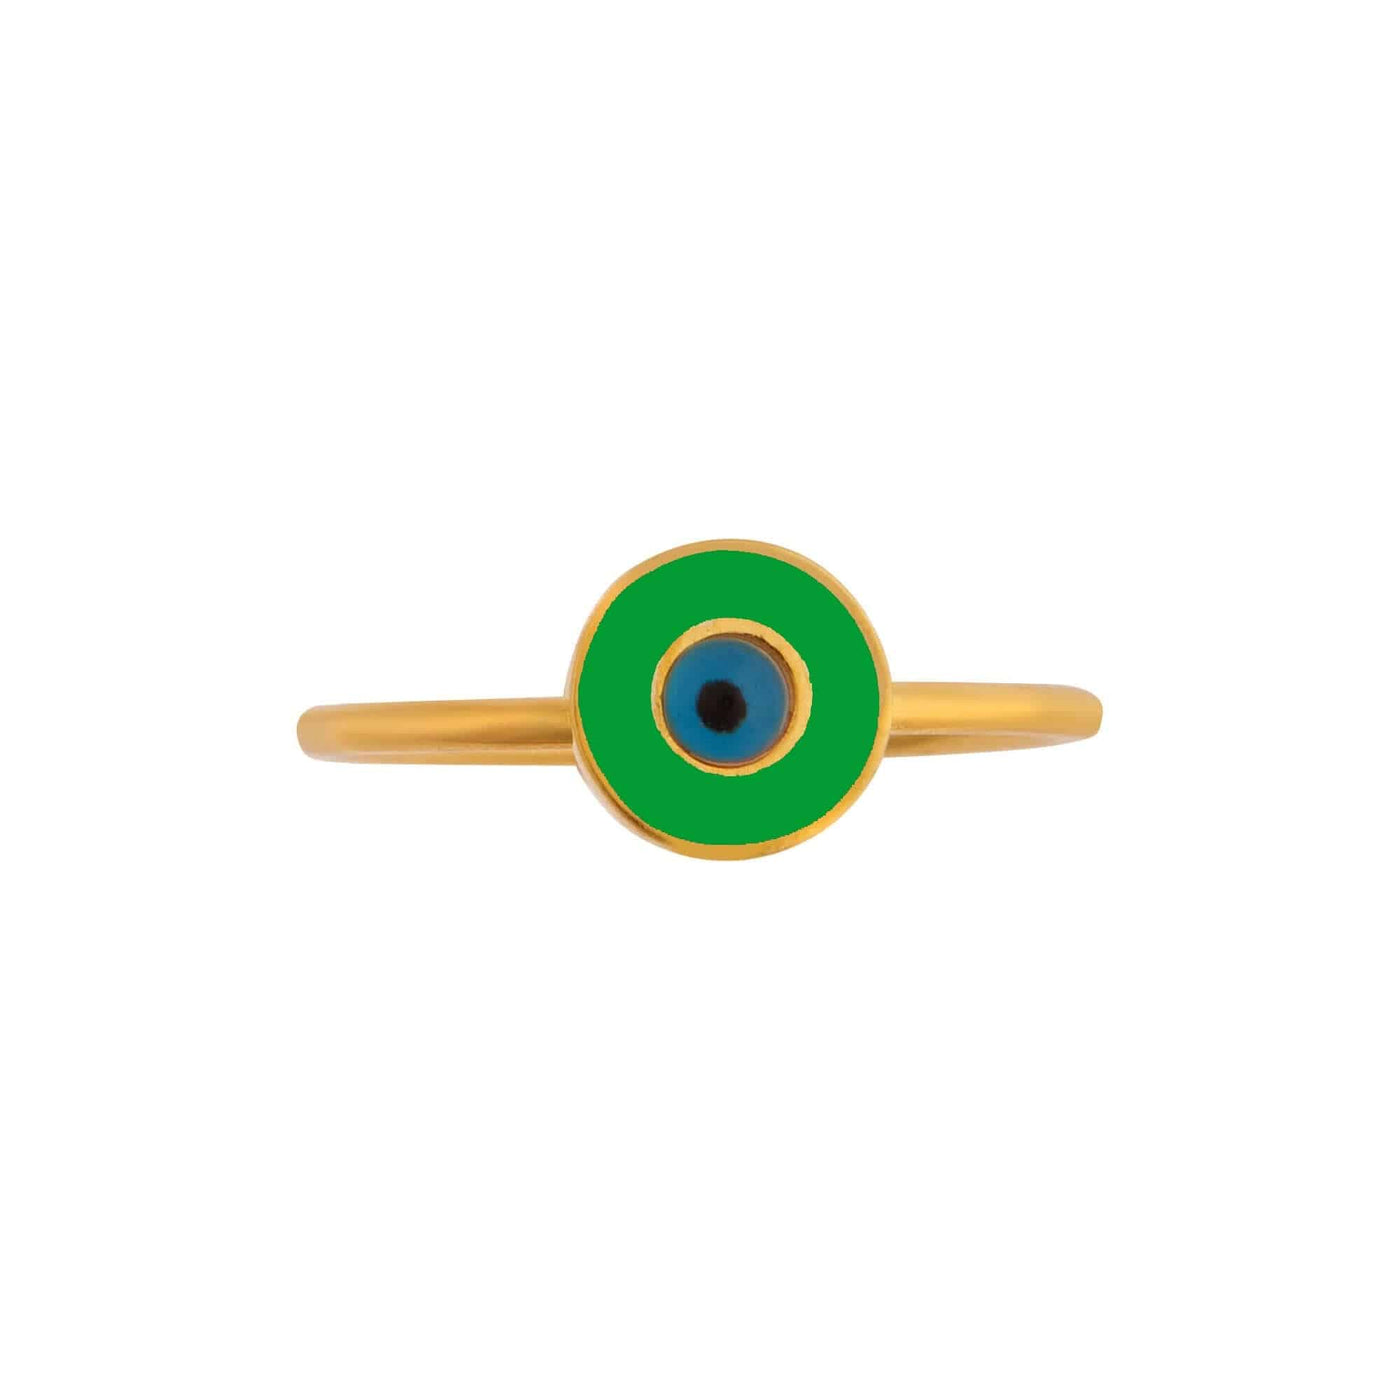 Neon Green Eye Ring - Eye M by Ileana Makri